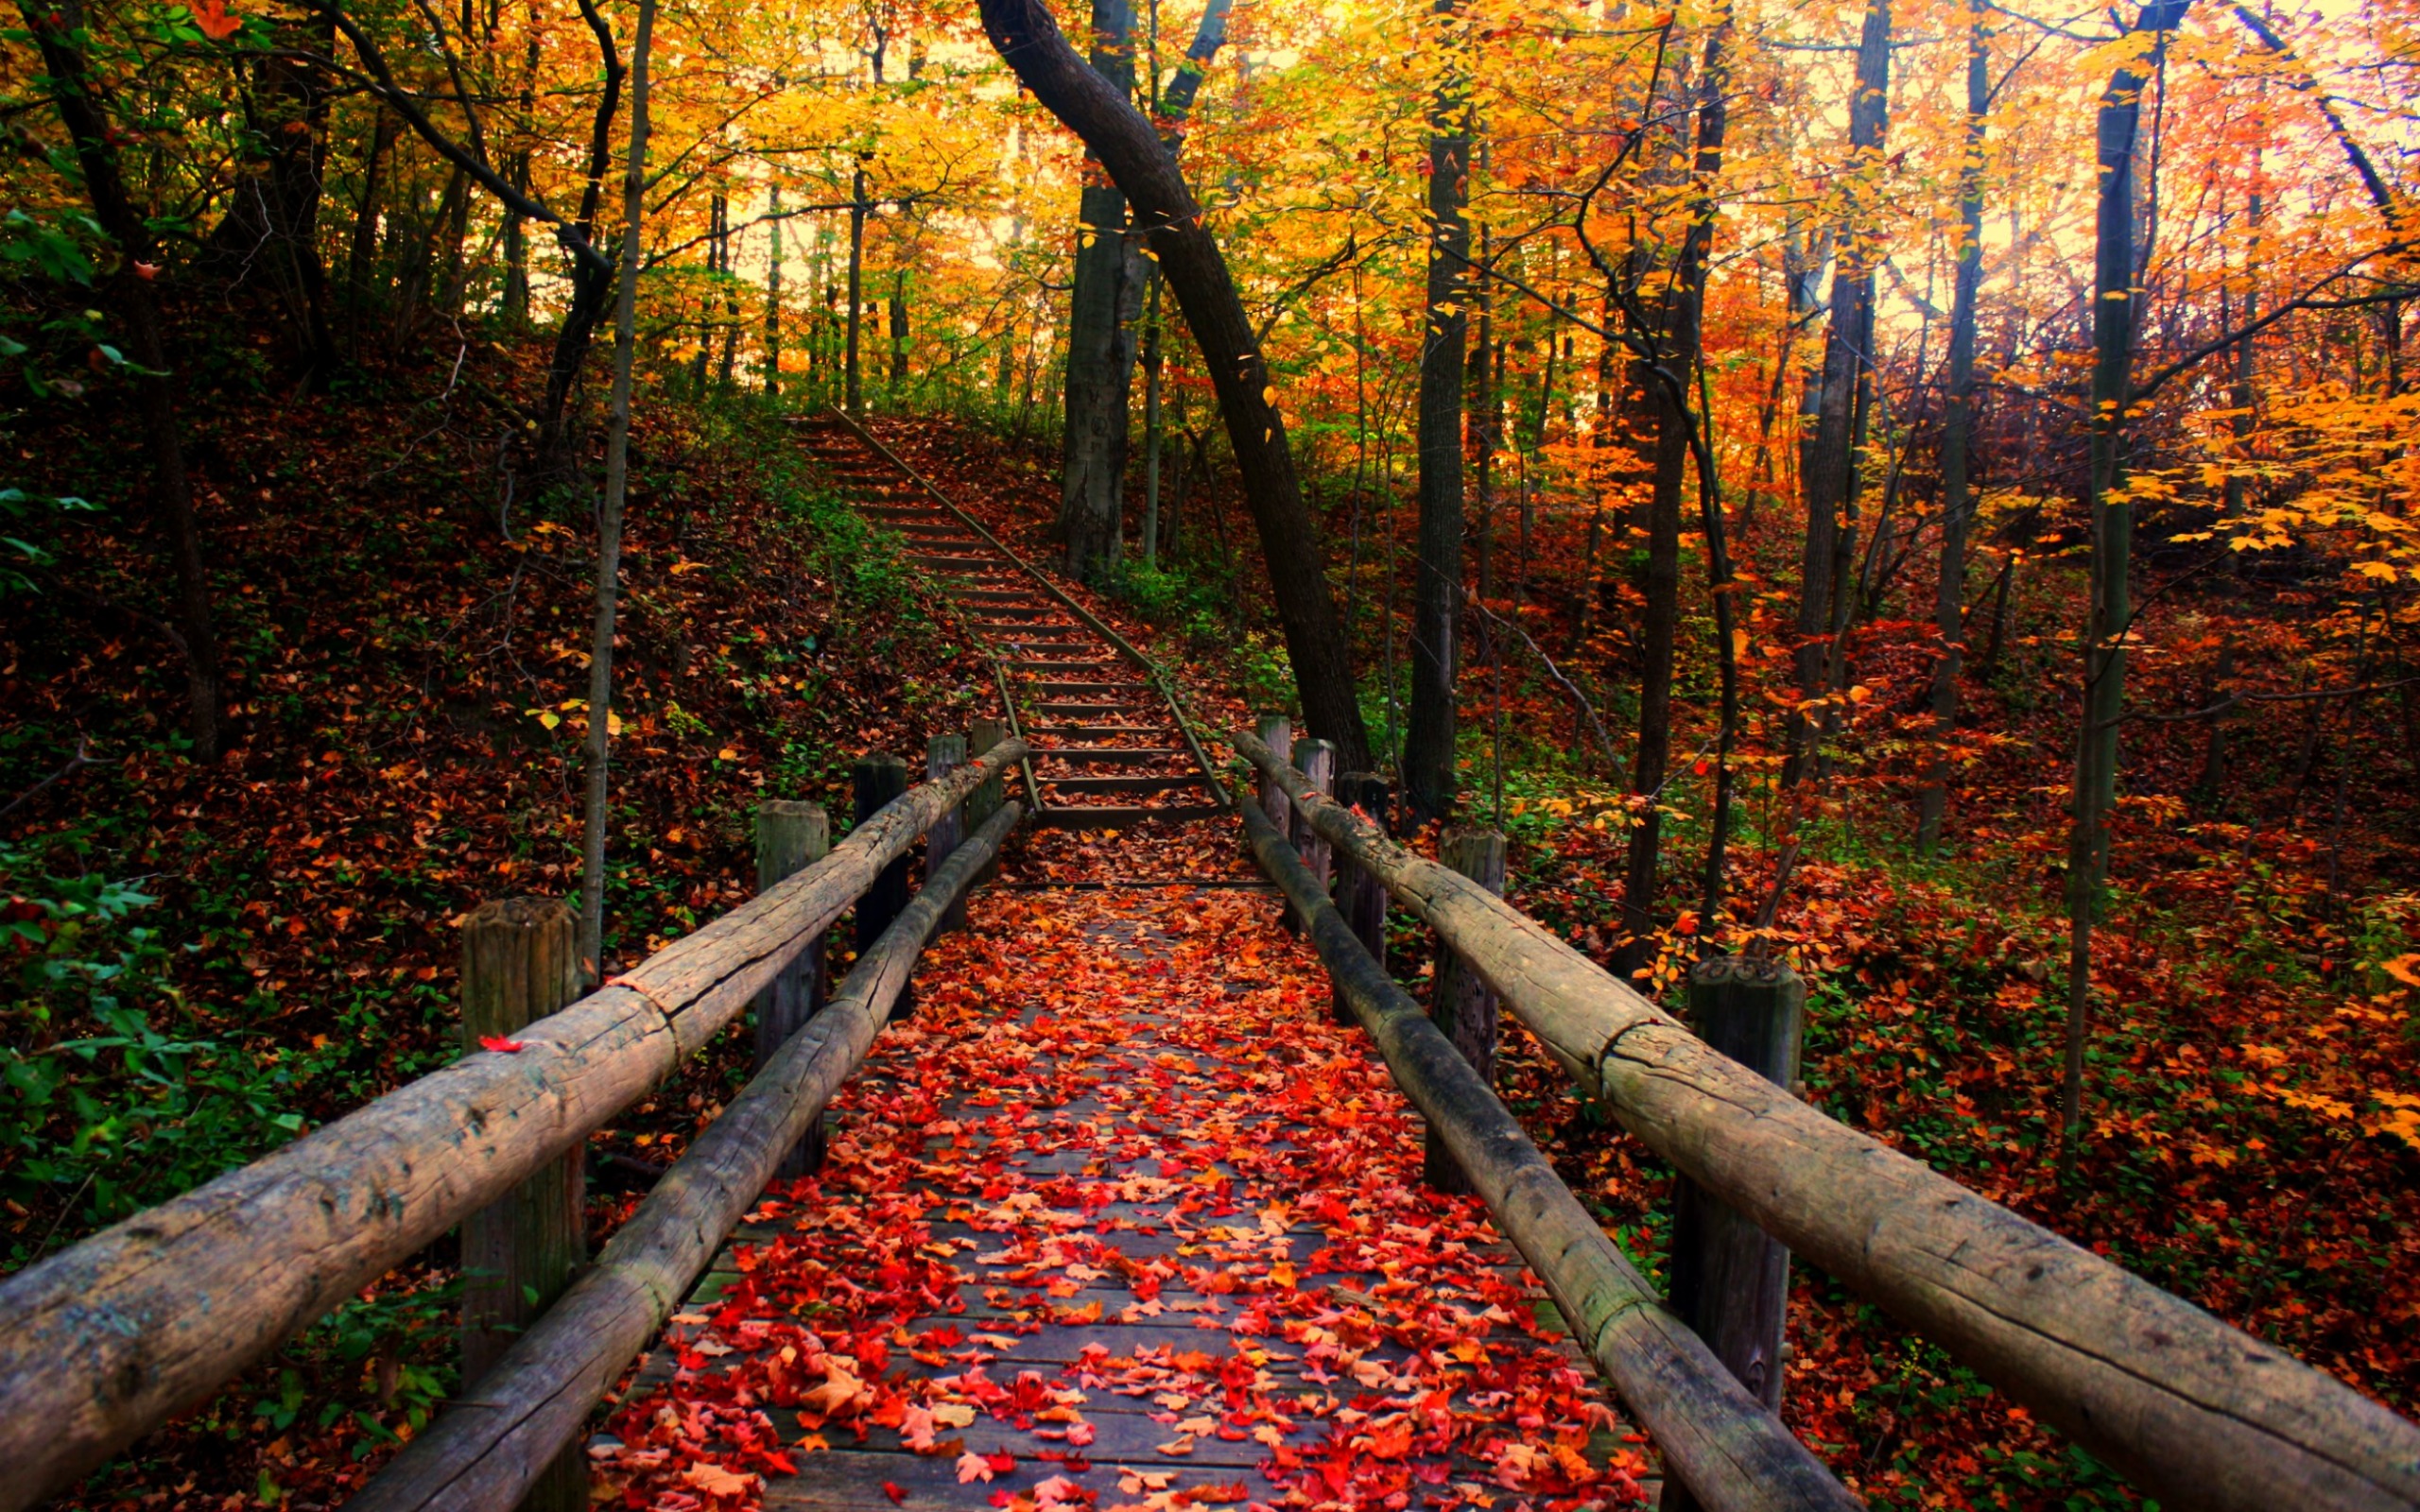 autumn background wallpaper,natural landscape,nature,tree,deciduous,autumn